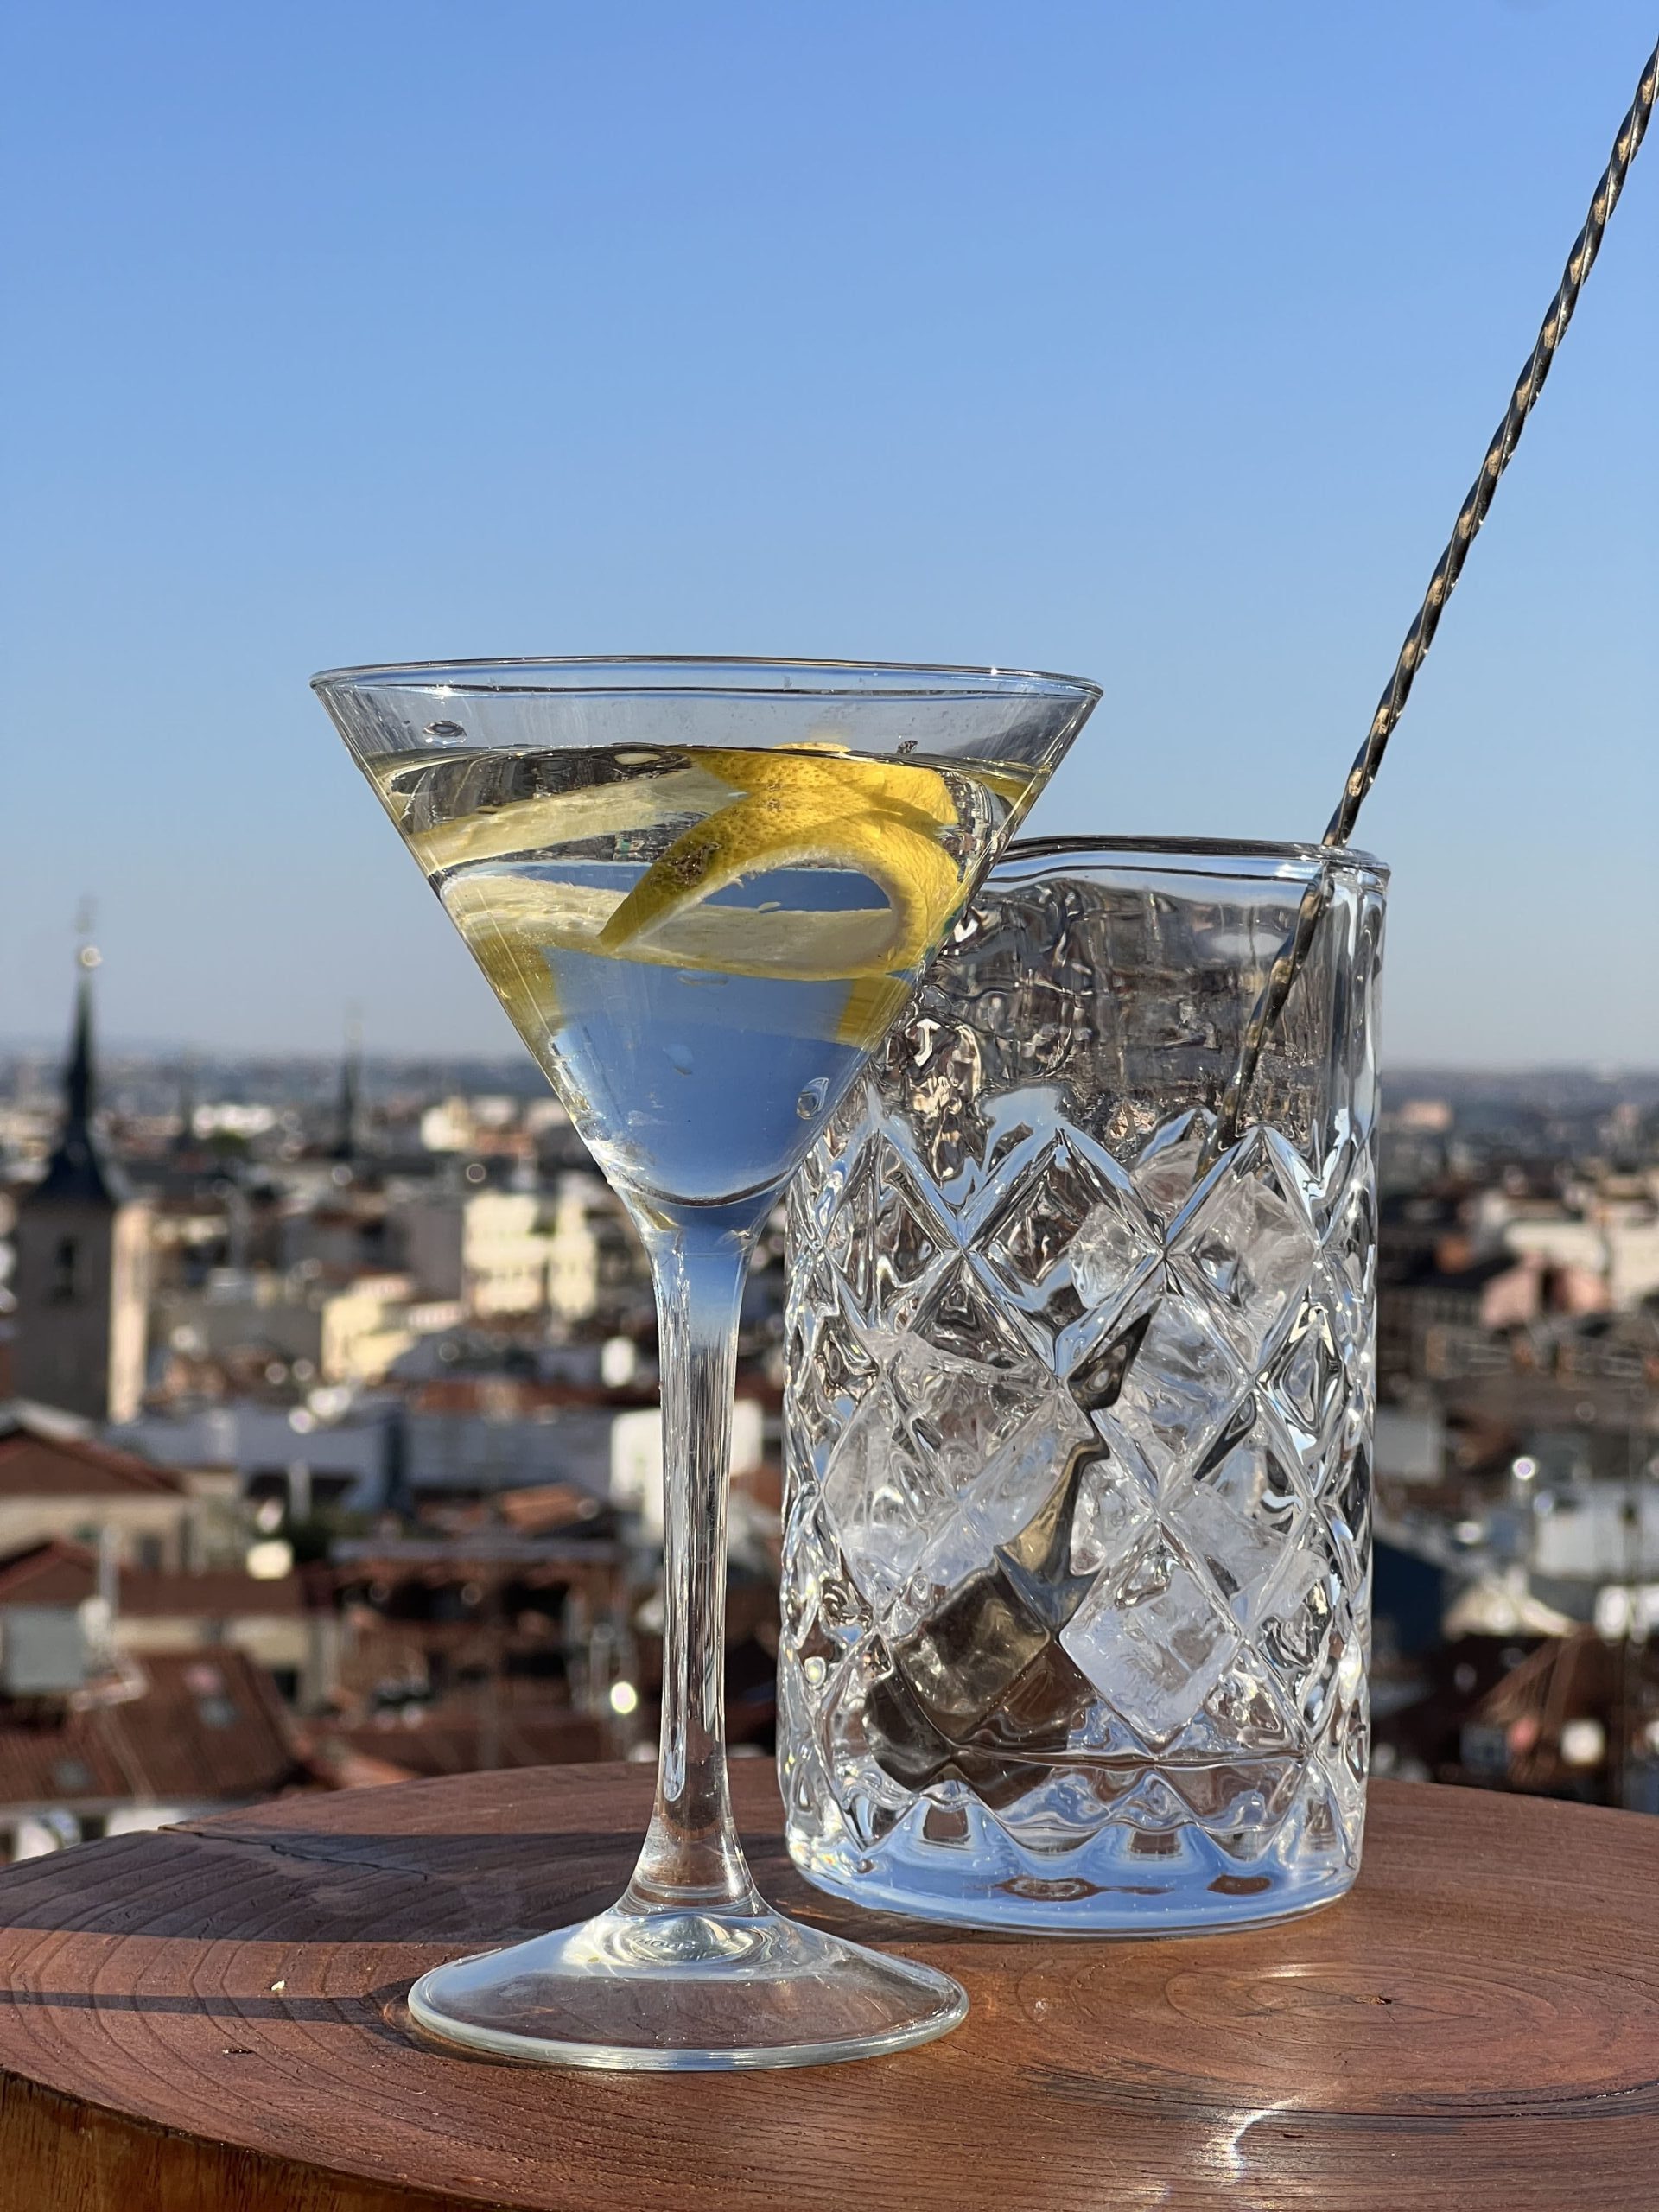 Gin tonic clásico con skyline madrileño de fondo